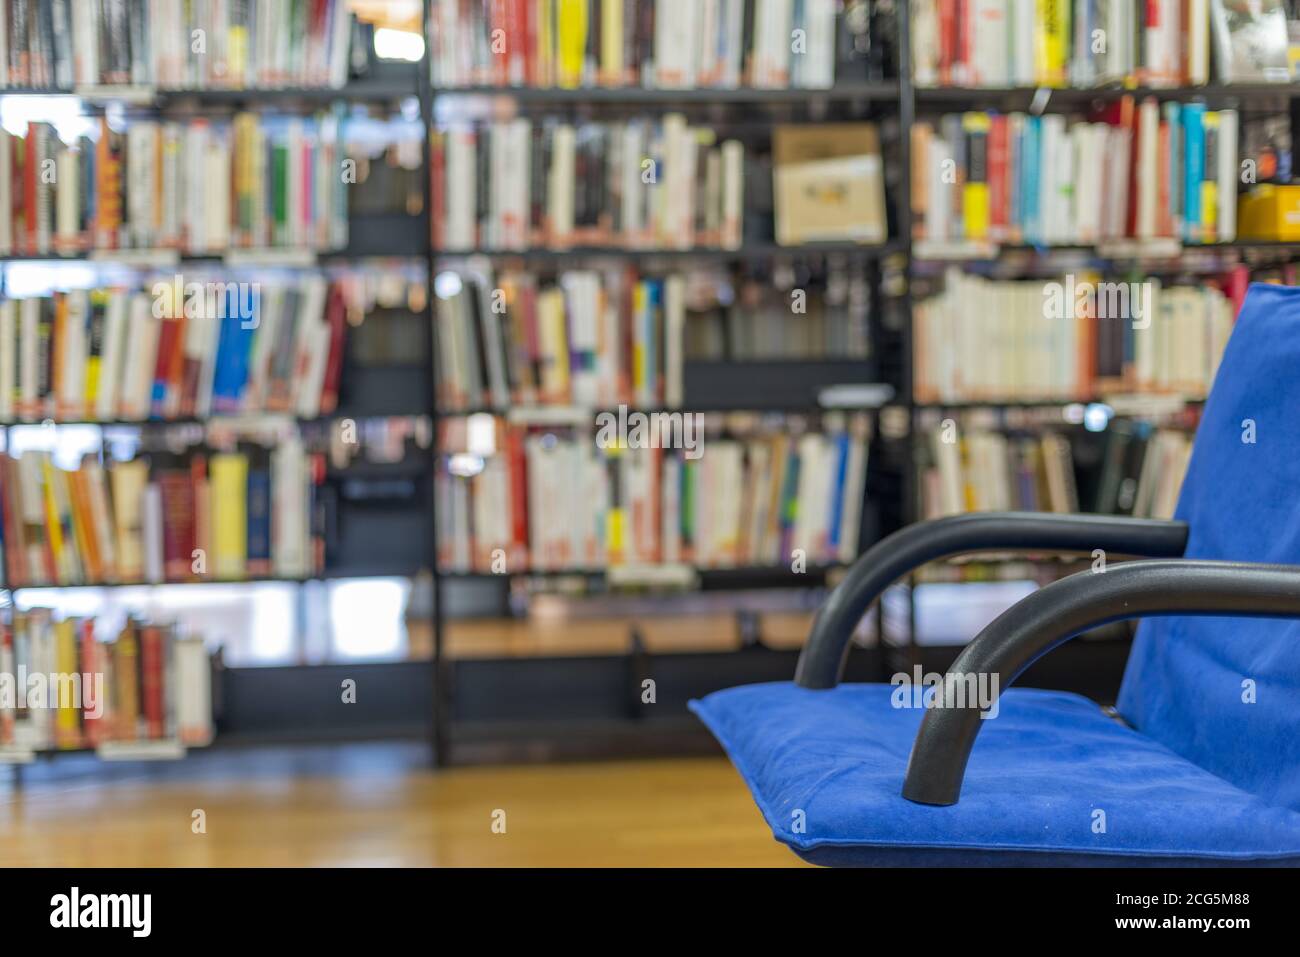 Öffentliche Bibliothek innen mit unbesetzten blauen Sessel und viele Bücher in den Regalen Stockfoto